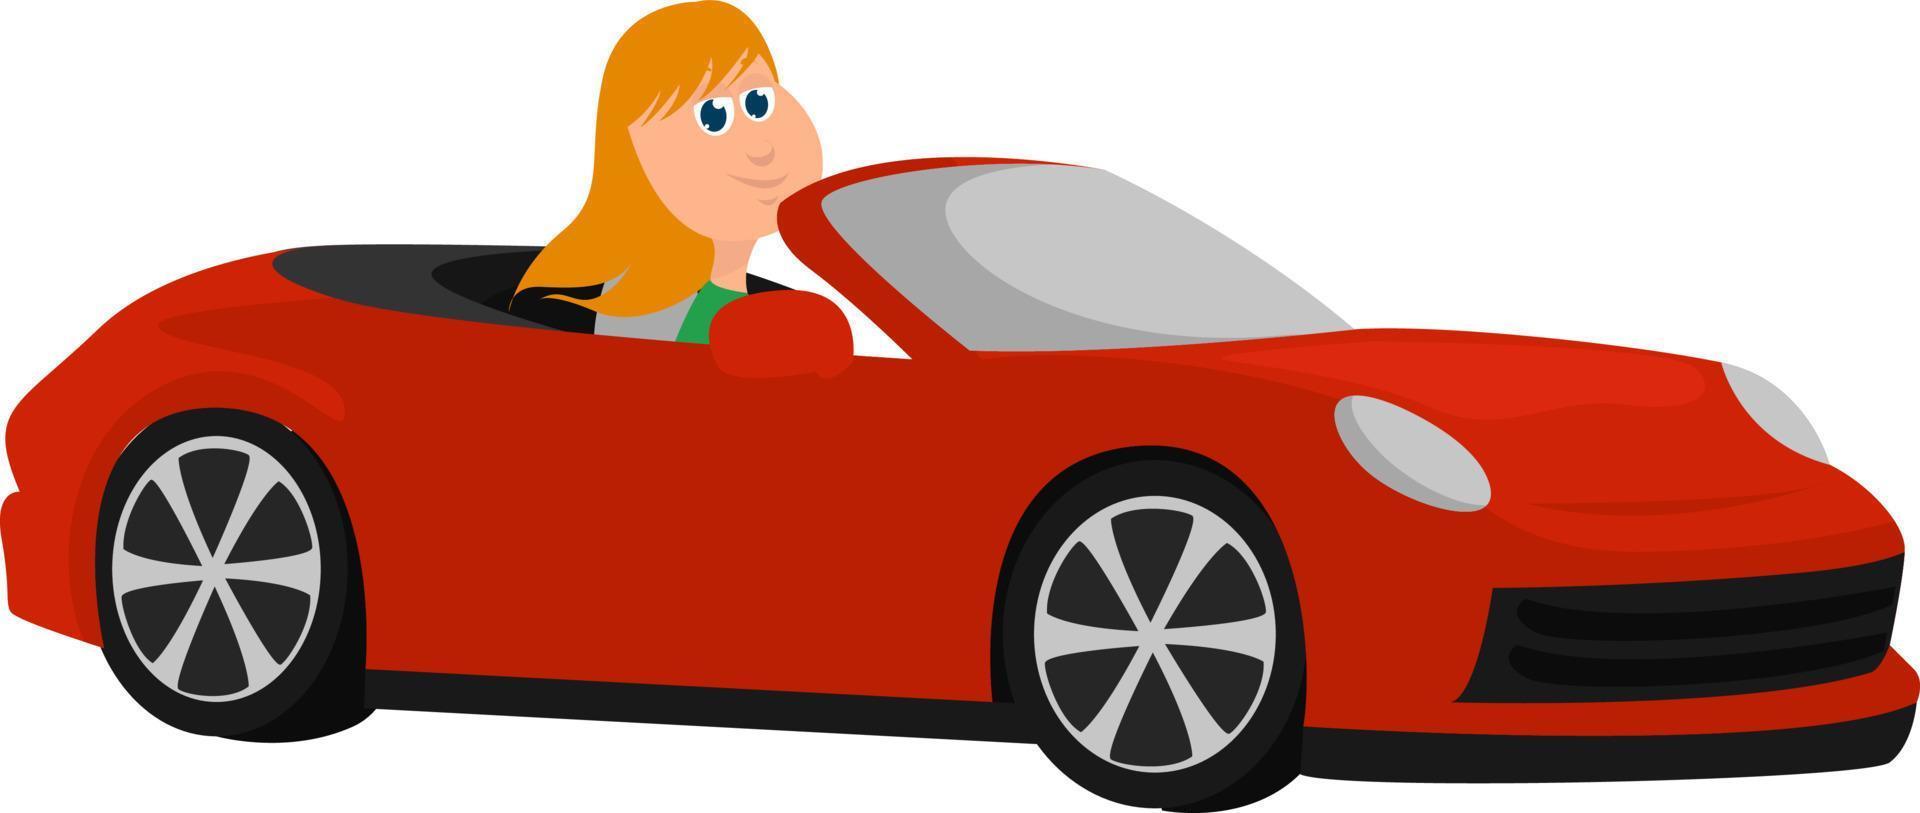 garota no carro vermelho, ilustração, vetor em fundo branco